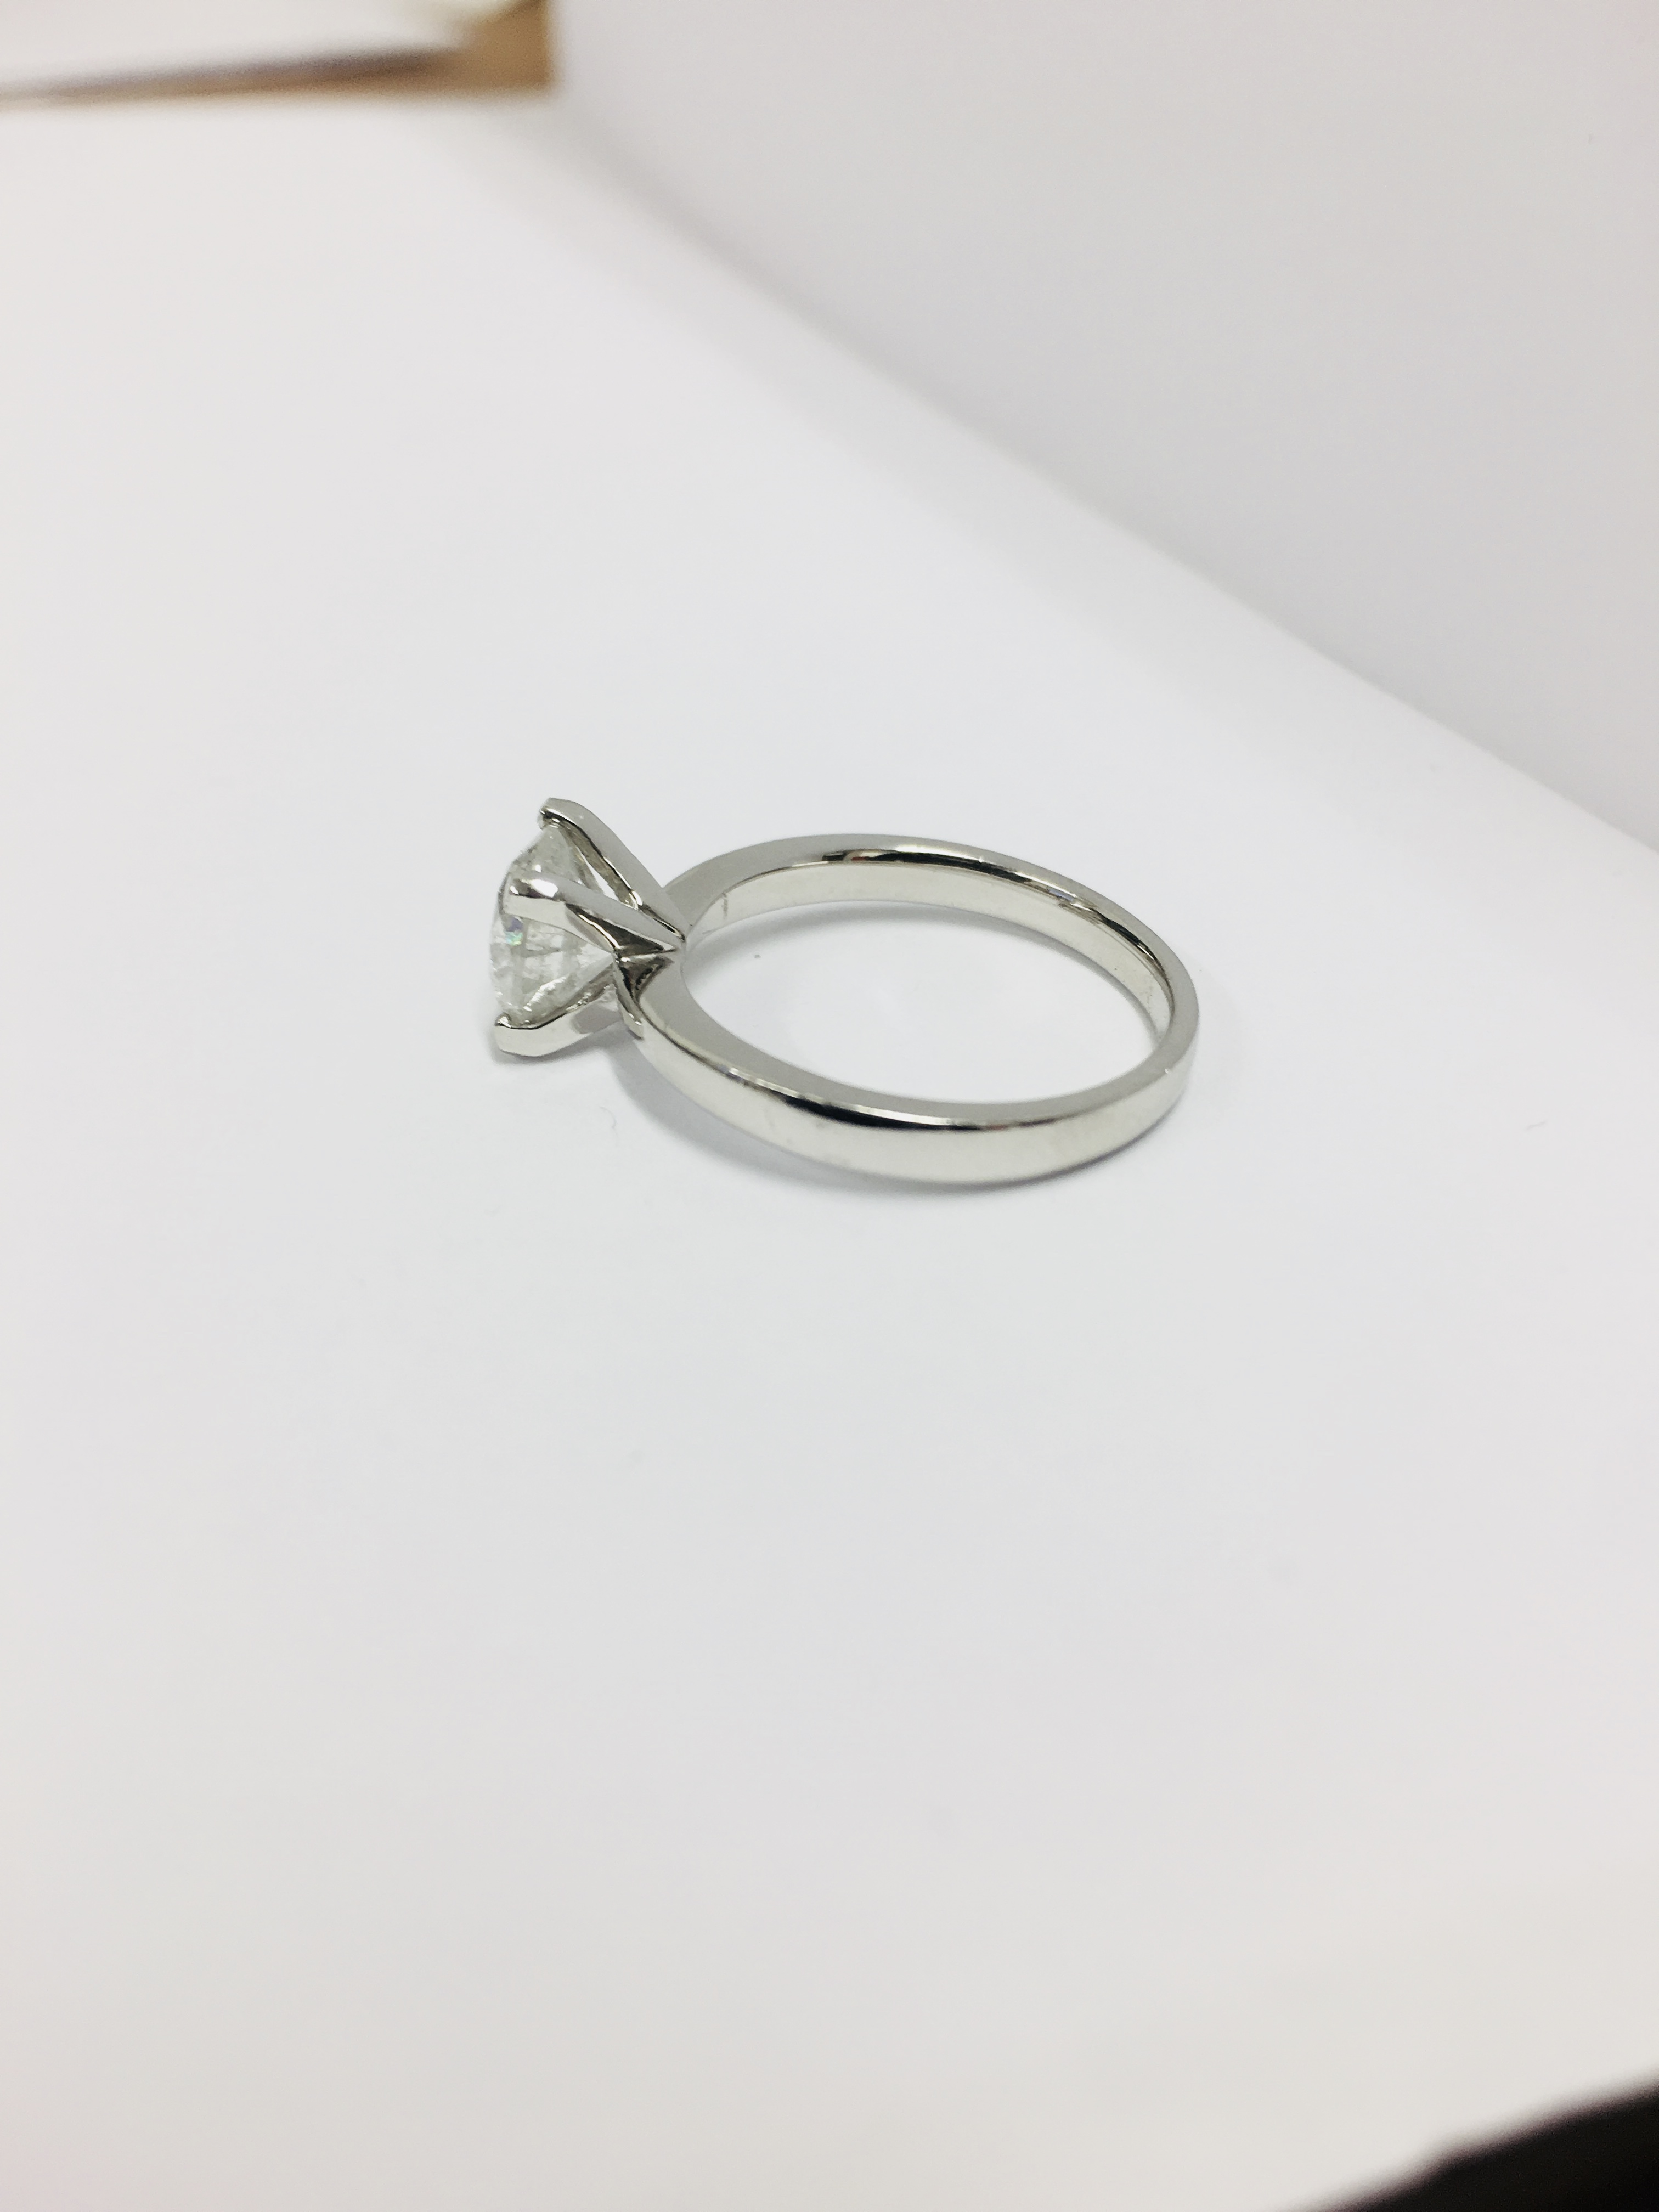 2.08ct diamond solitaire ring set in platinum - Image 30 of 48